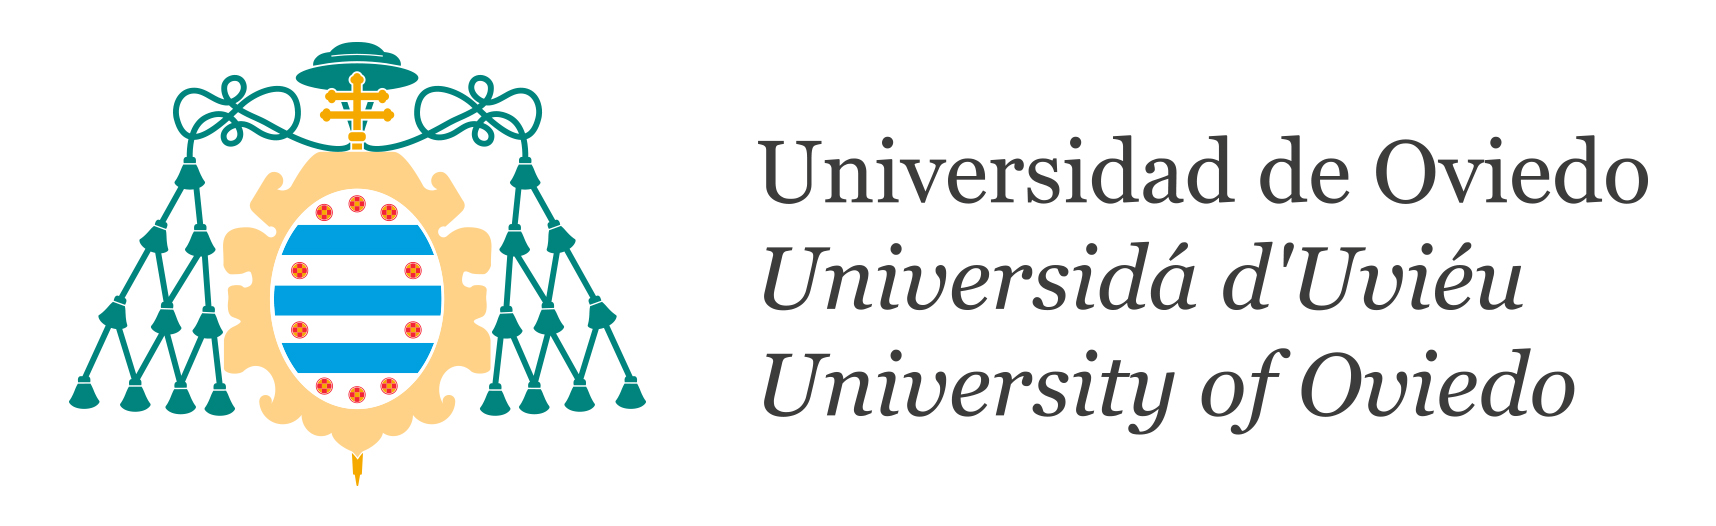 Logotipo de la Universidad de Oviedo